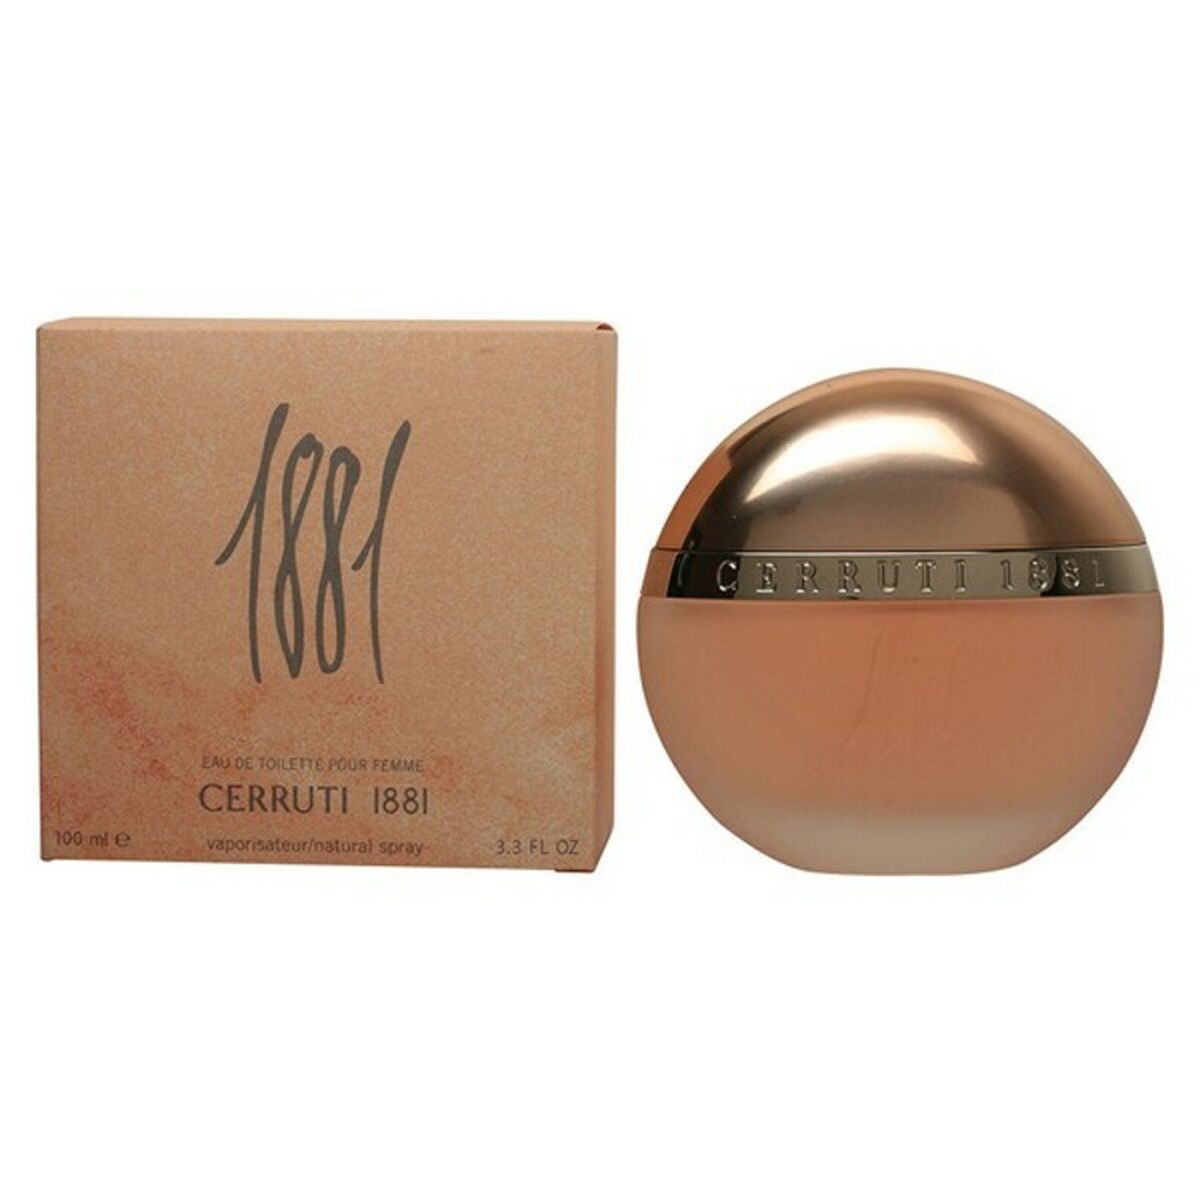 Parfum Femei 1881 Cerruti EDT - Capacitate 30 ml